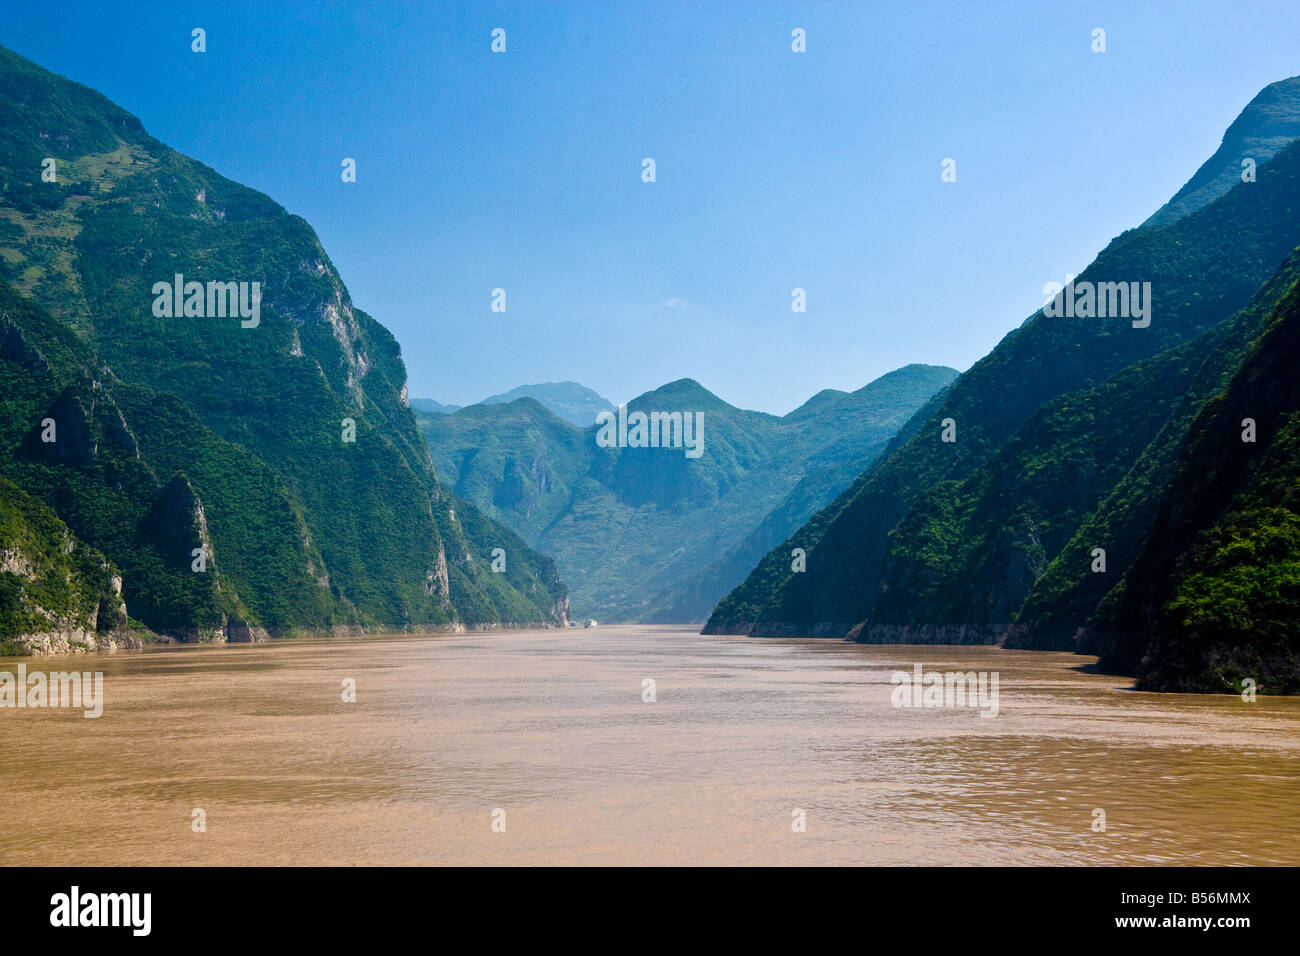 Entrée de la Gorge de Wu dans la région des Trois Gorges du Fleuve Yangzi CHINE JMH3408 Banque D'Images